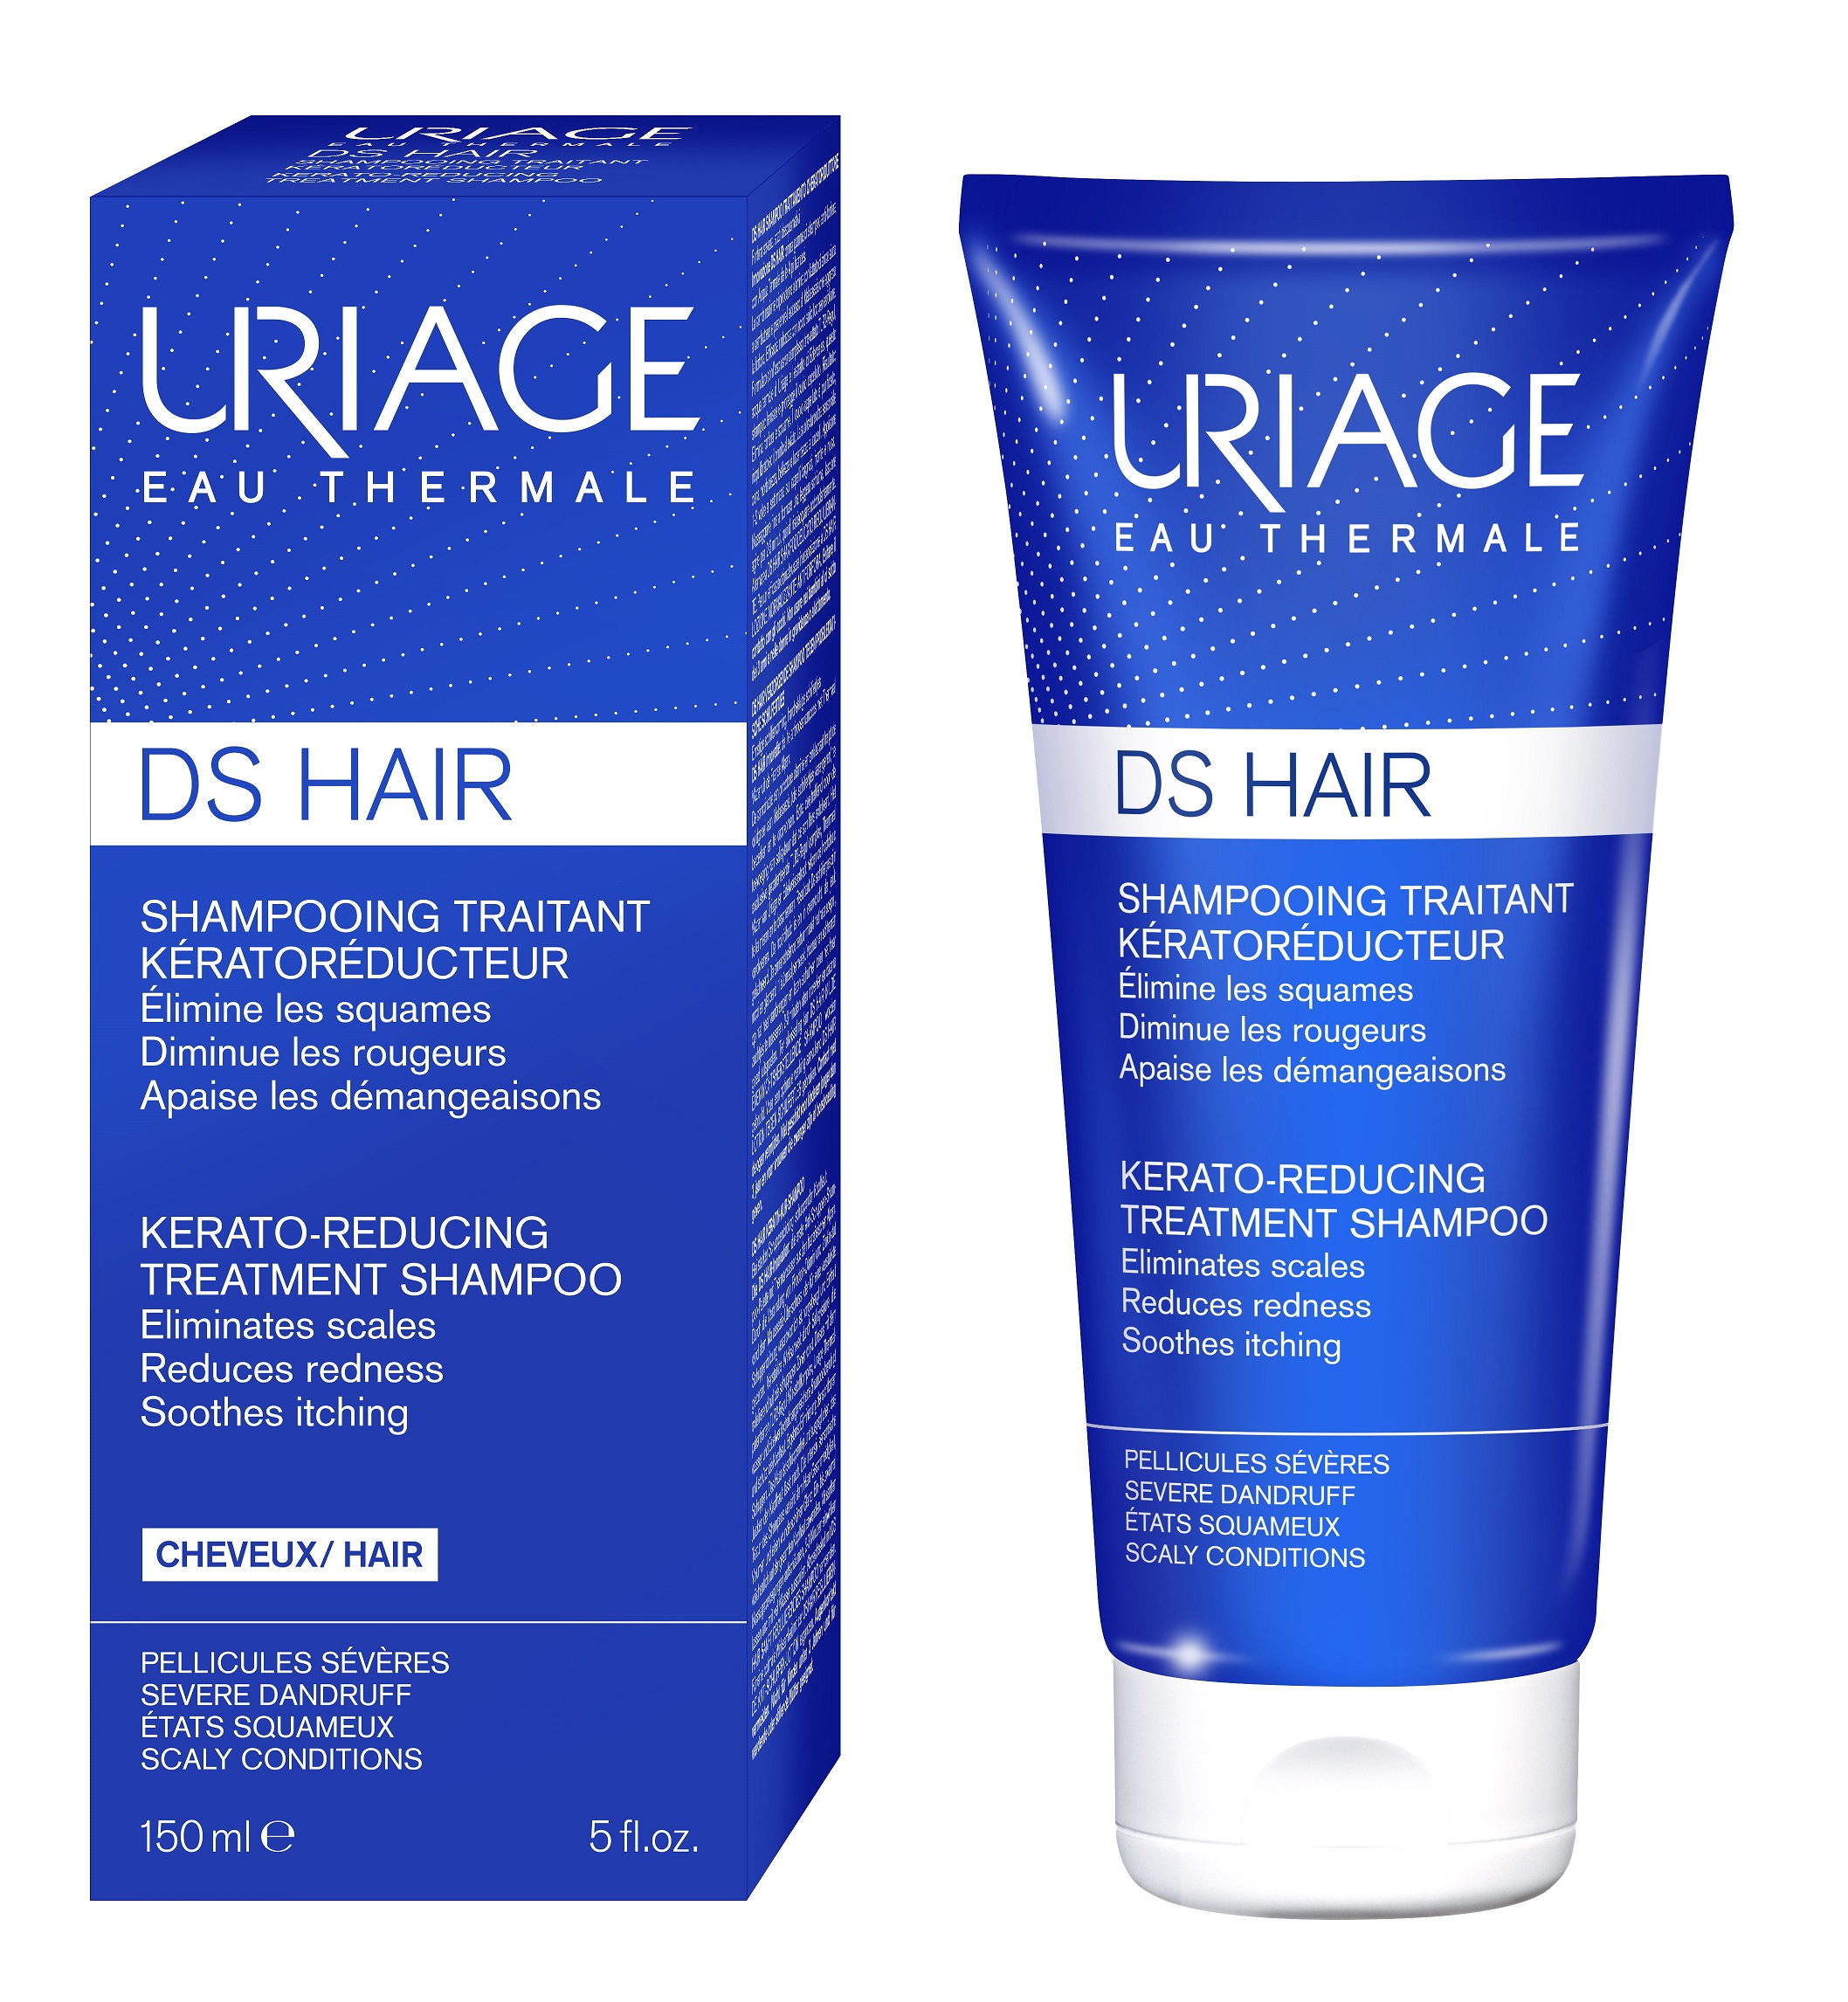 Mătreață și sebum în exces - Uriage DS Hair sampon tratament kerato-reductor 150ml, epastila.ro